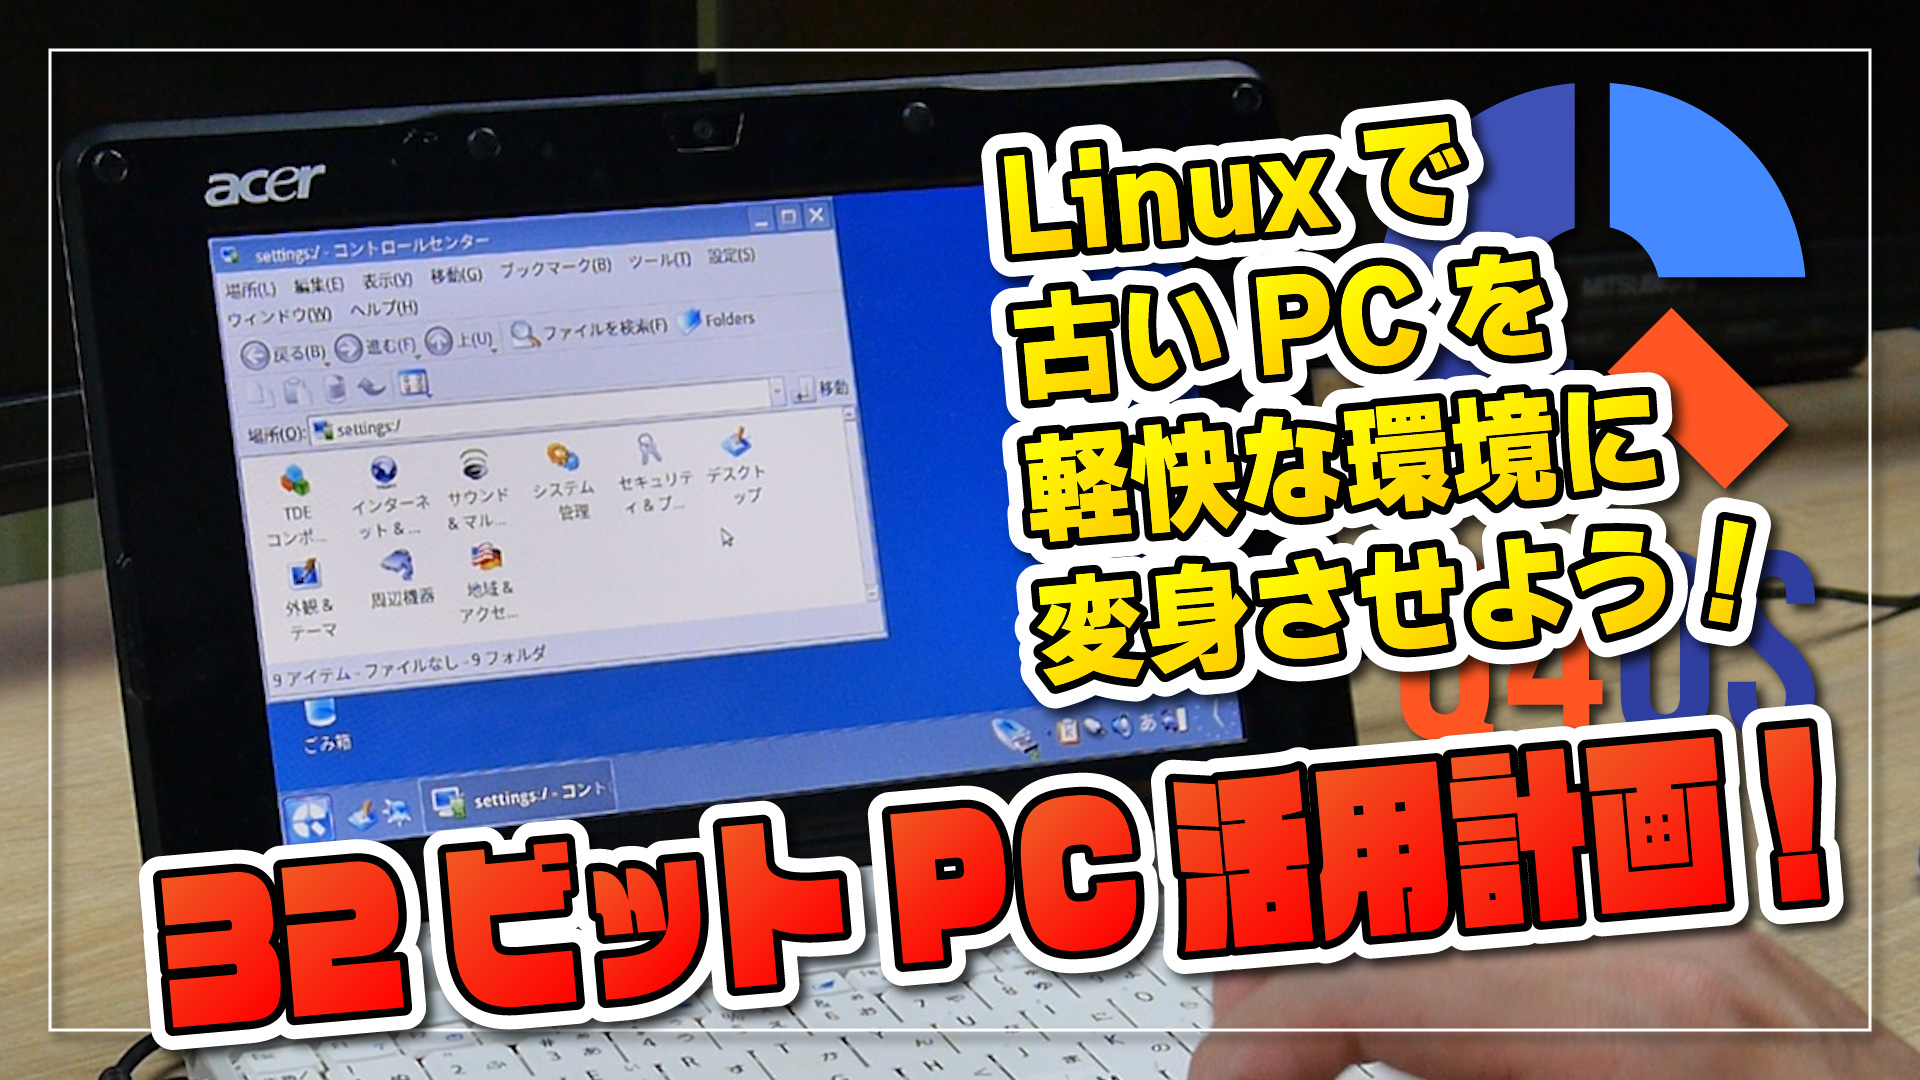 【32ビット PC 活用計画】Linux で古い PC を軽快な環境に変身させよう！